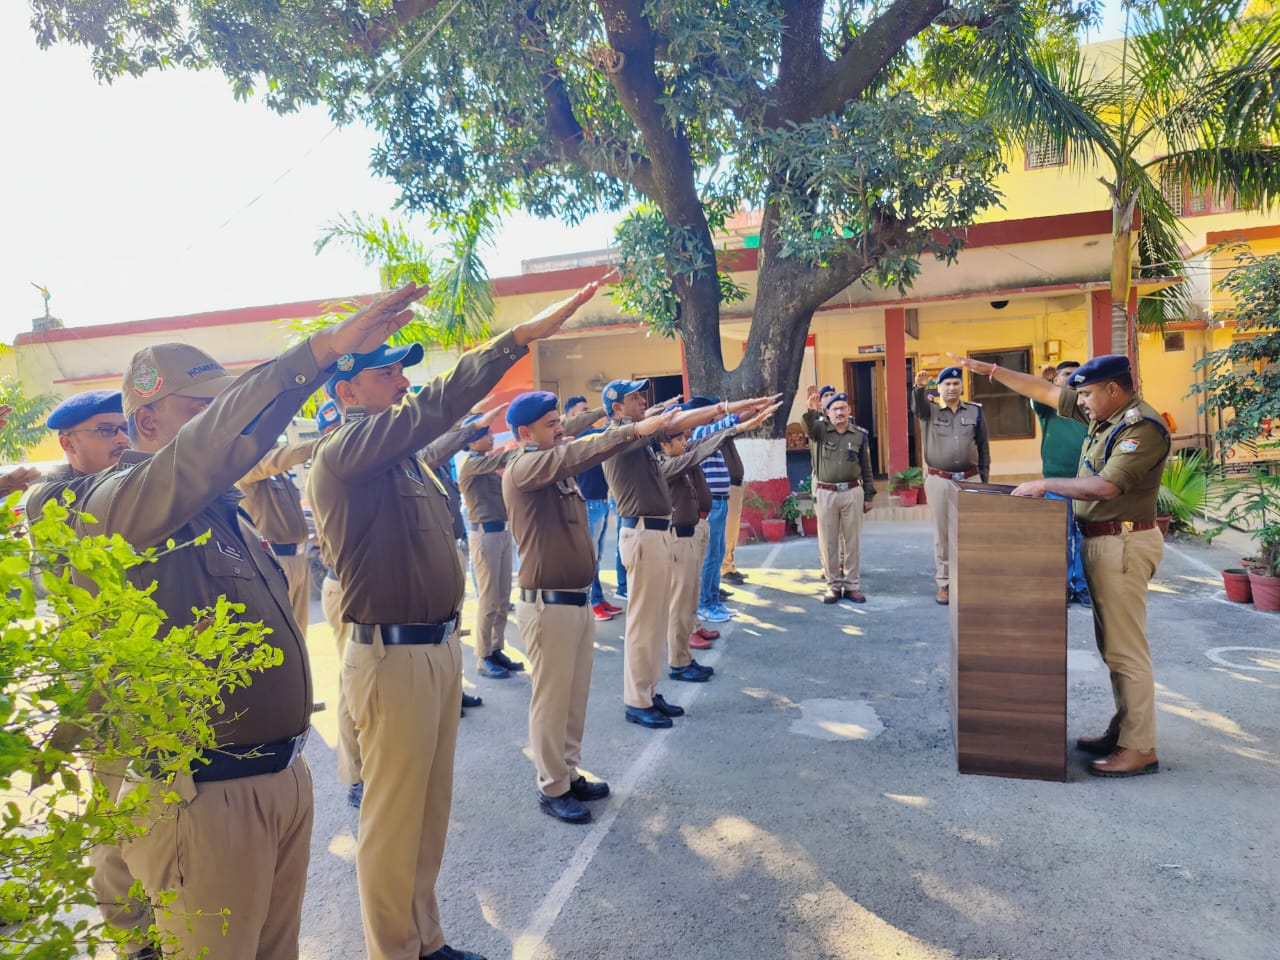 संविधान दिवस के अवसर पर जनपद पौड़ी के तैनात पुलिस कर्मियों को दिलाई गई “भारतीय संविधान की उद्देशिका” की शपथ